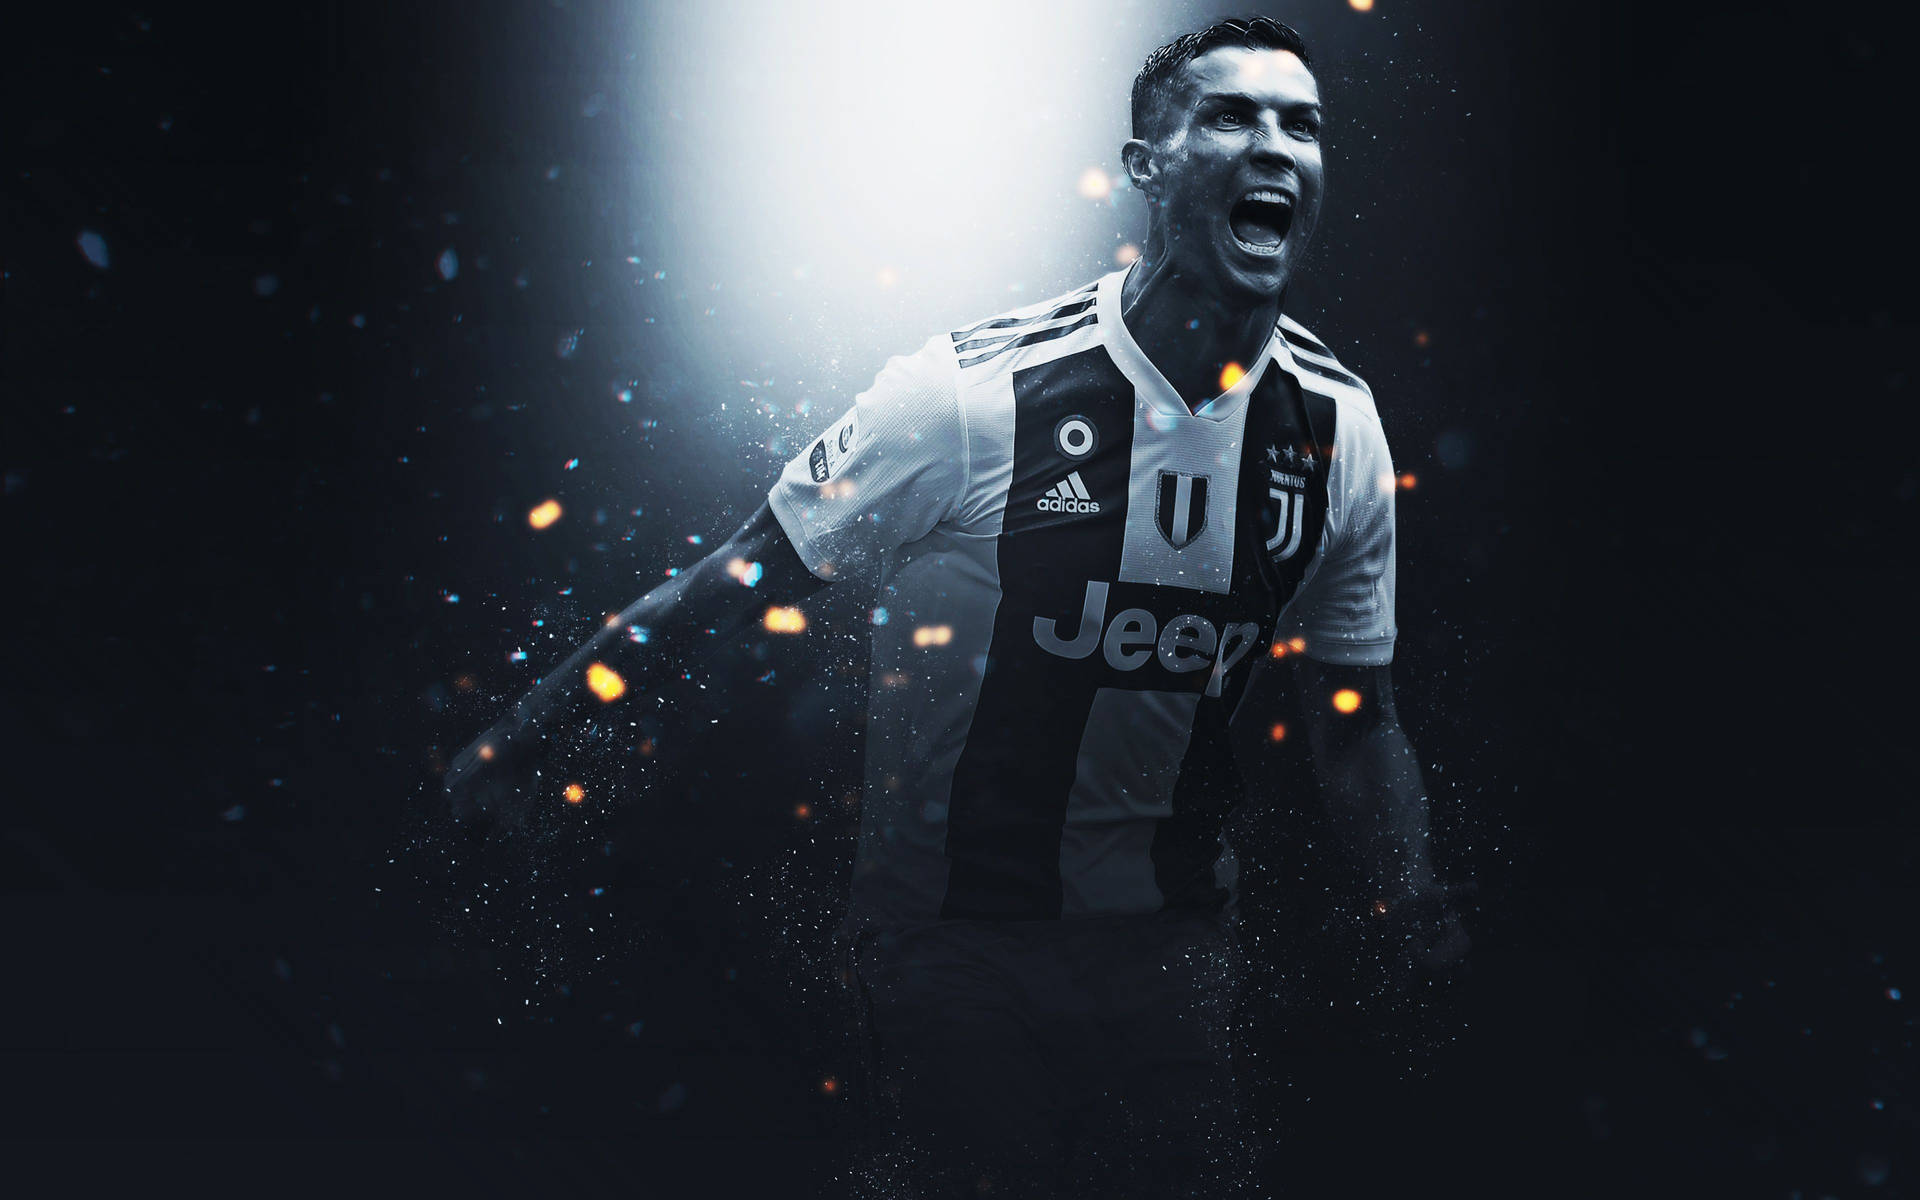 Free Cristiano Ronaldo Wallpaper Downloads, [300+] Cristiano Ronaldo  Wallpapers for FREE 